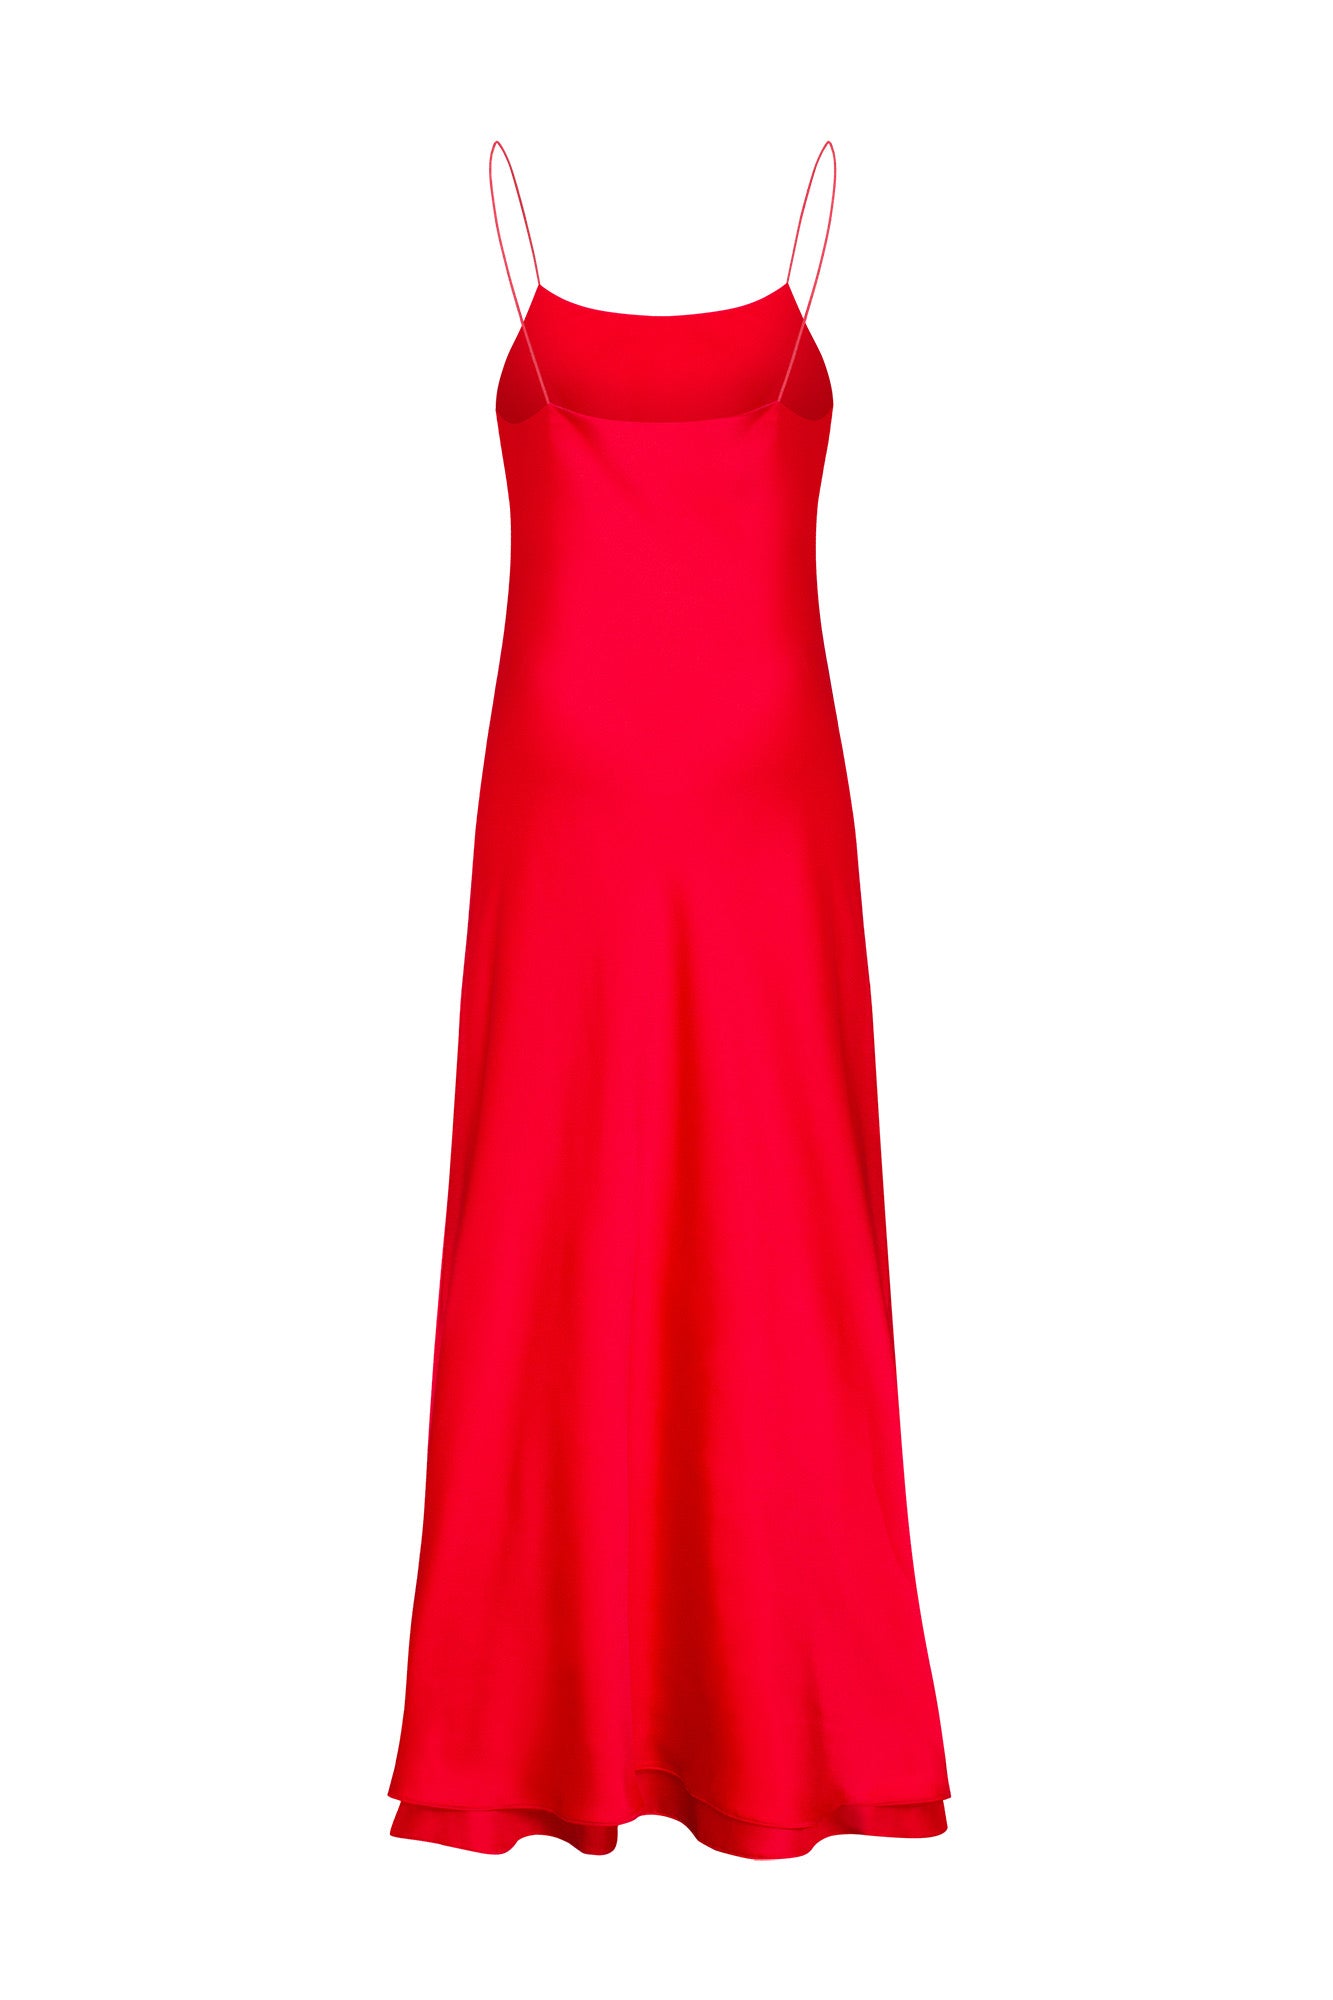 Aislin Red A-Line Short Dress